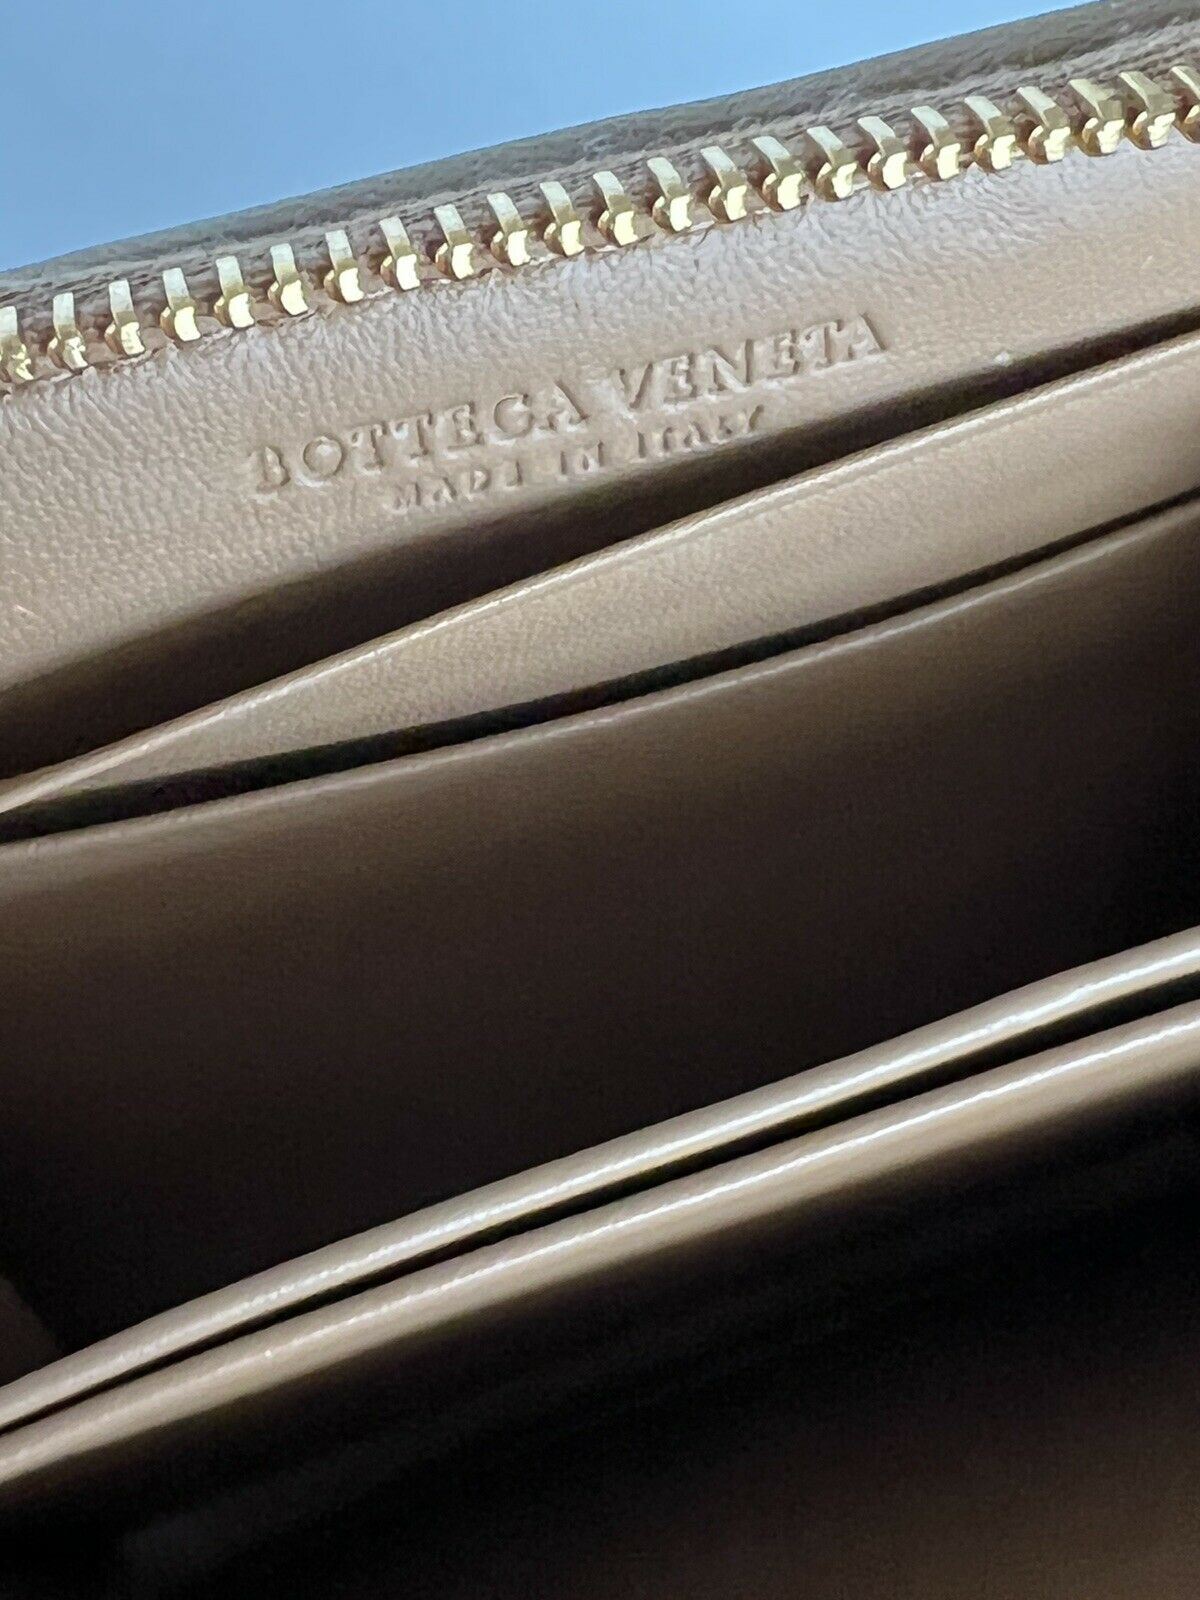 NWT $470 Bottega Veneta Zipper Leather Wallet Coin Purse Neon Camel 566512 Italy